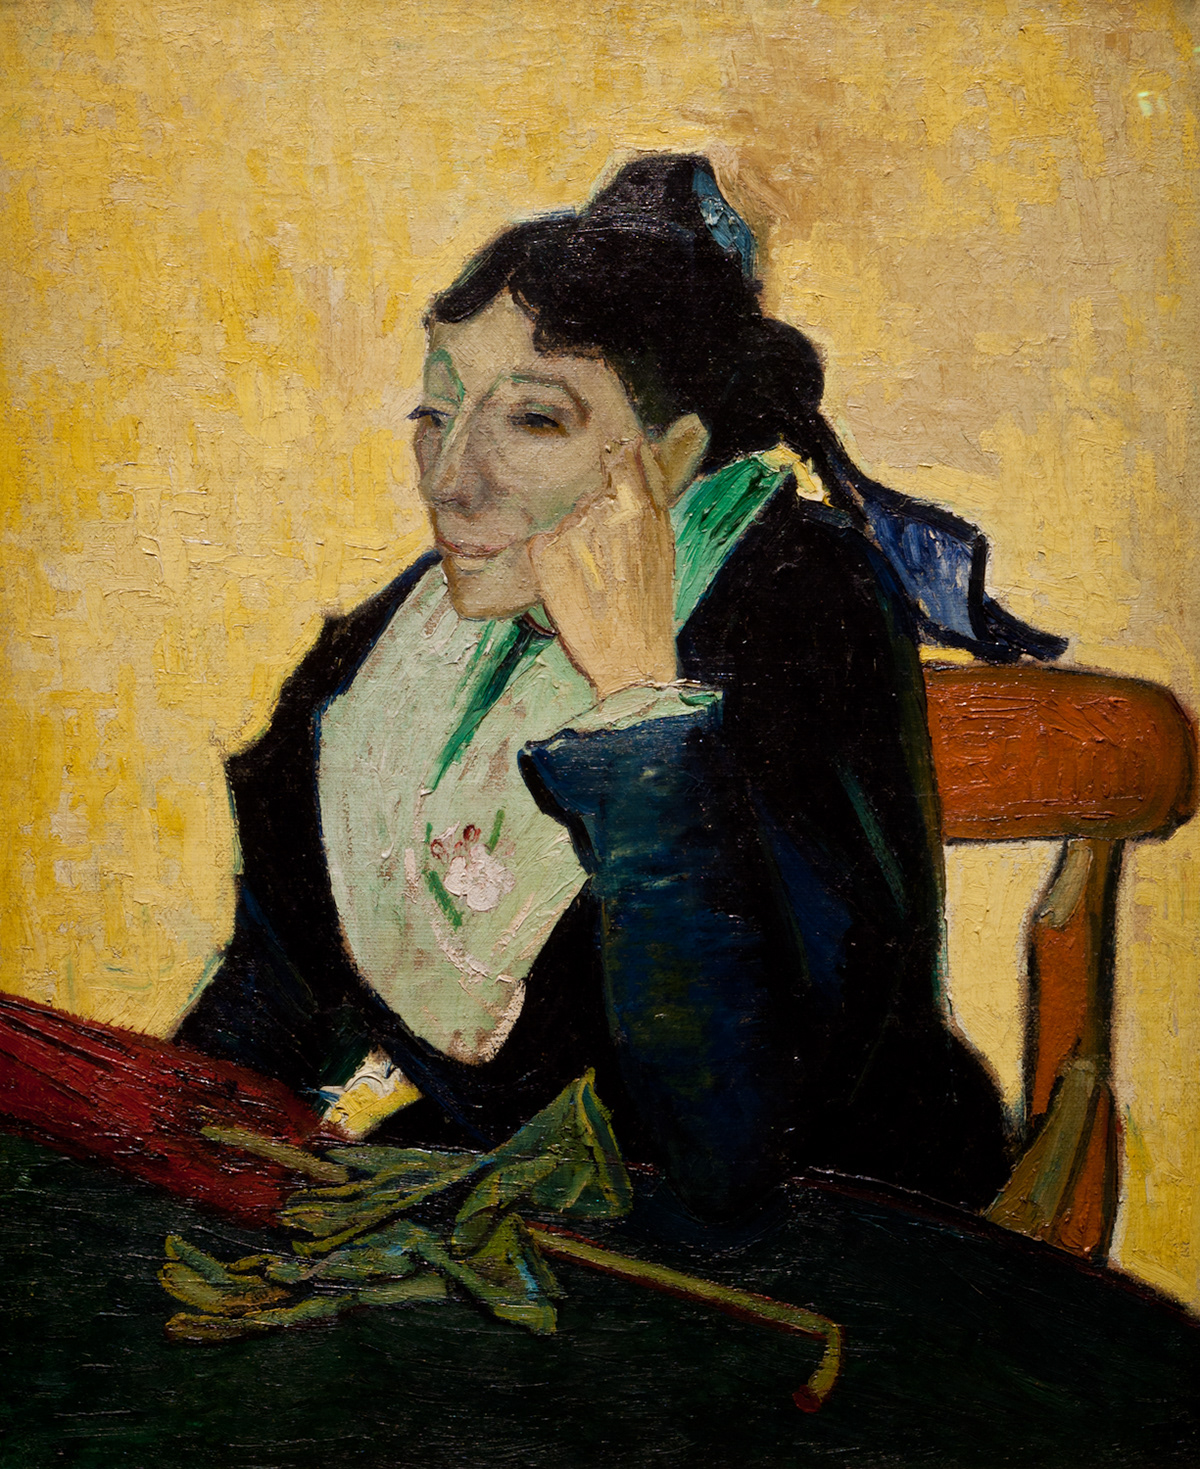 Monet  manet  renoir  Van Gogh musée d'orsay Paris  France masters  paintings impressionism art details